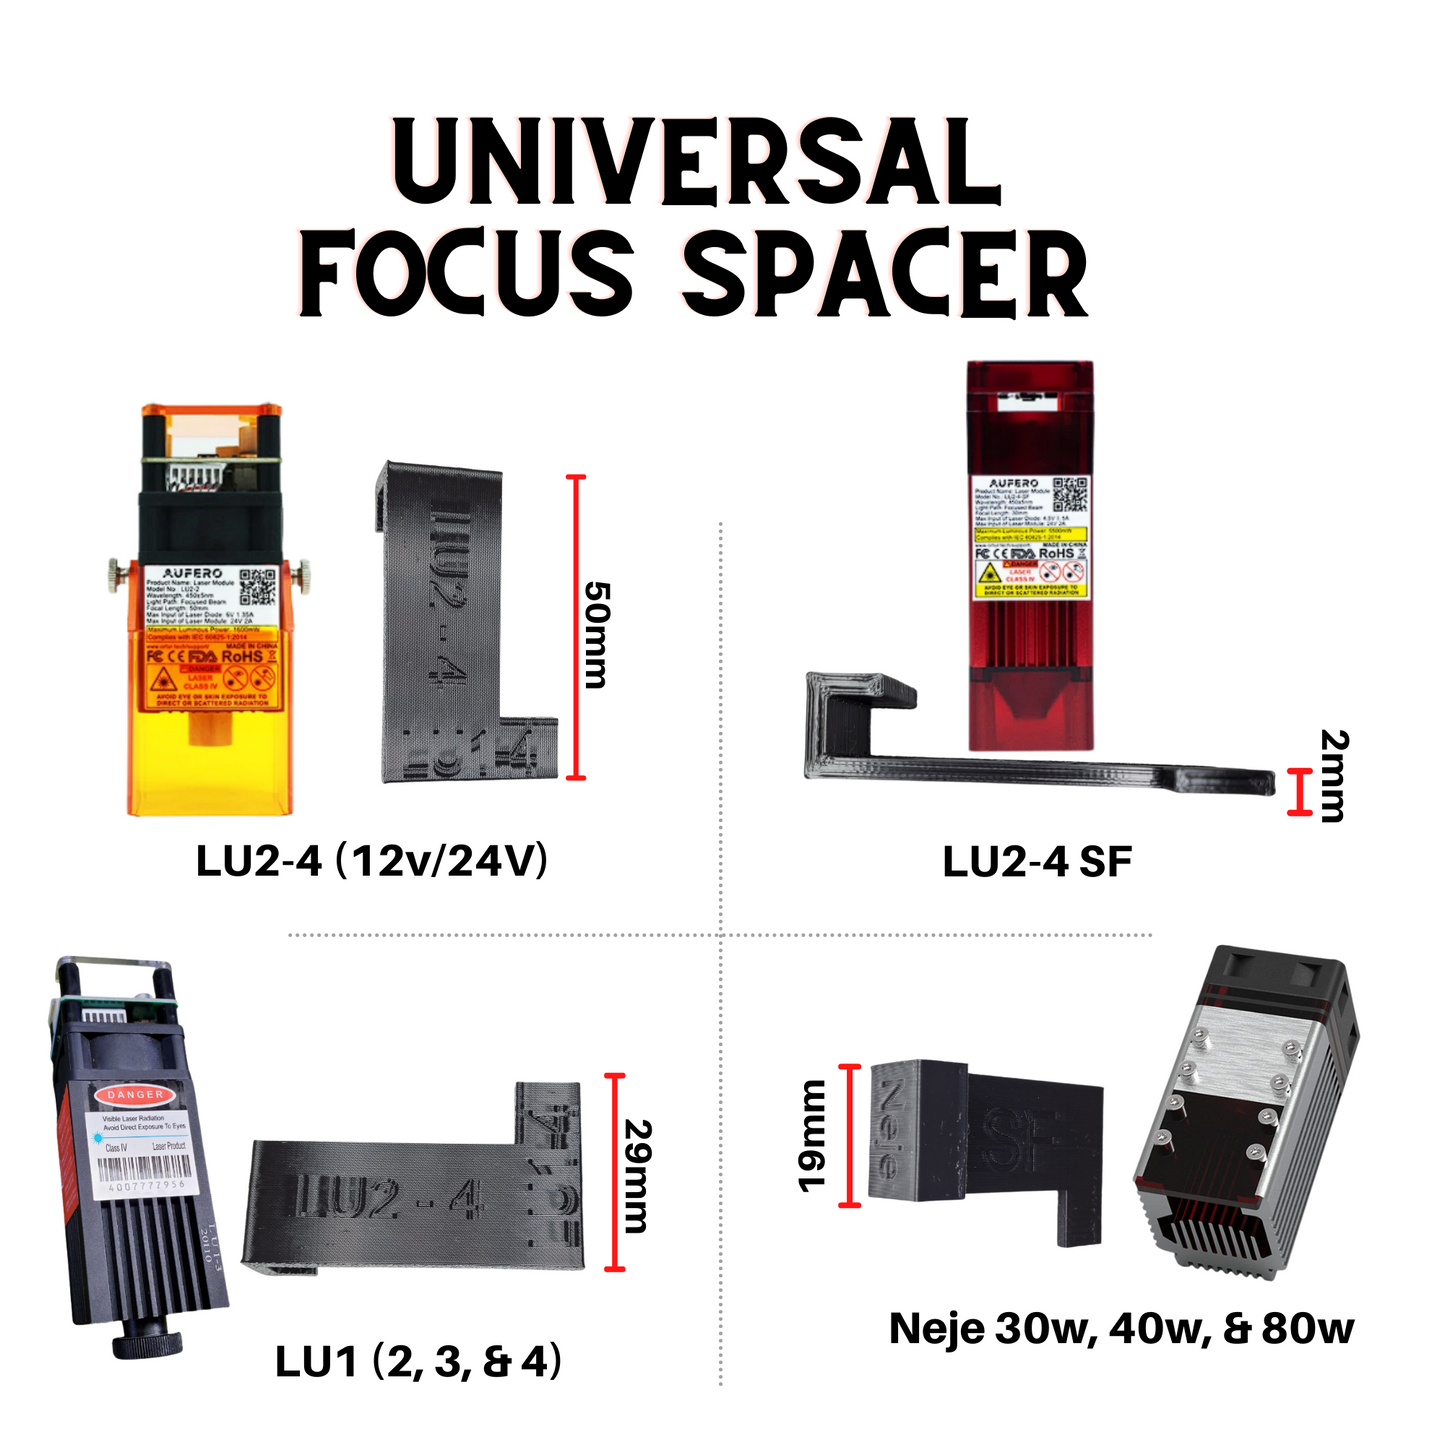 Universal Focus Spacer